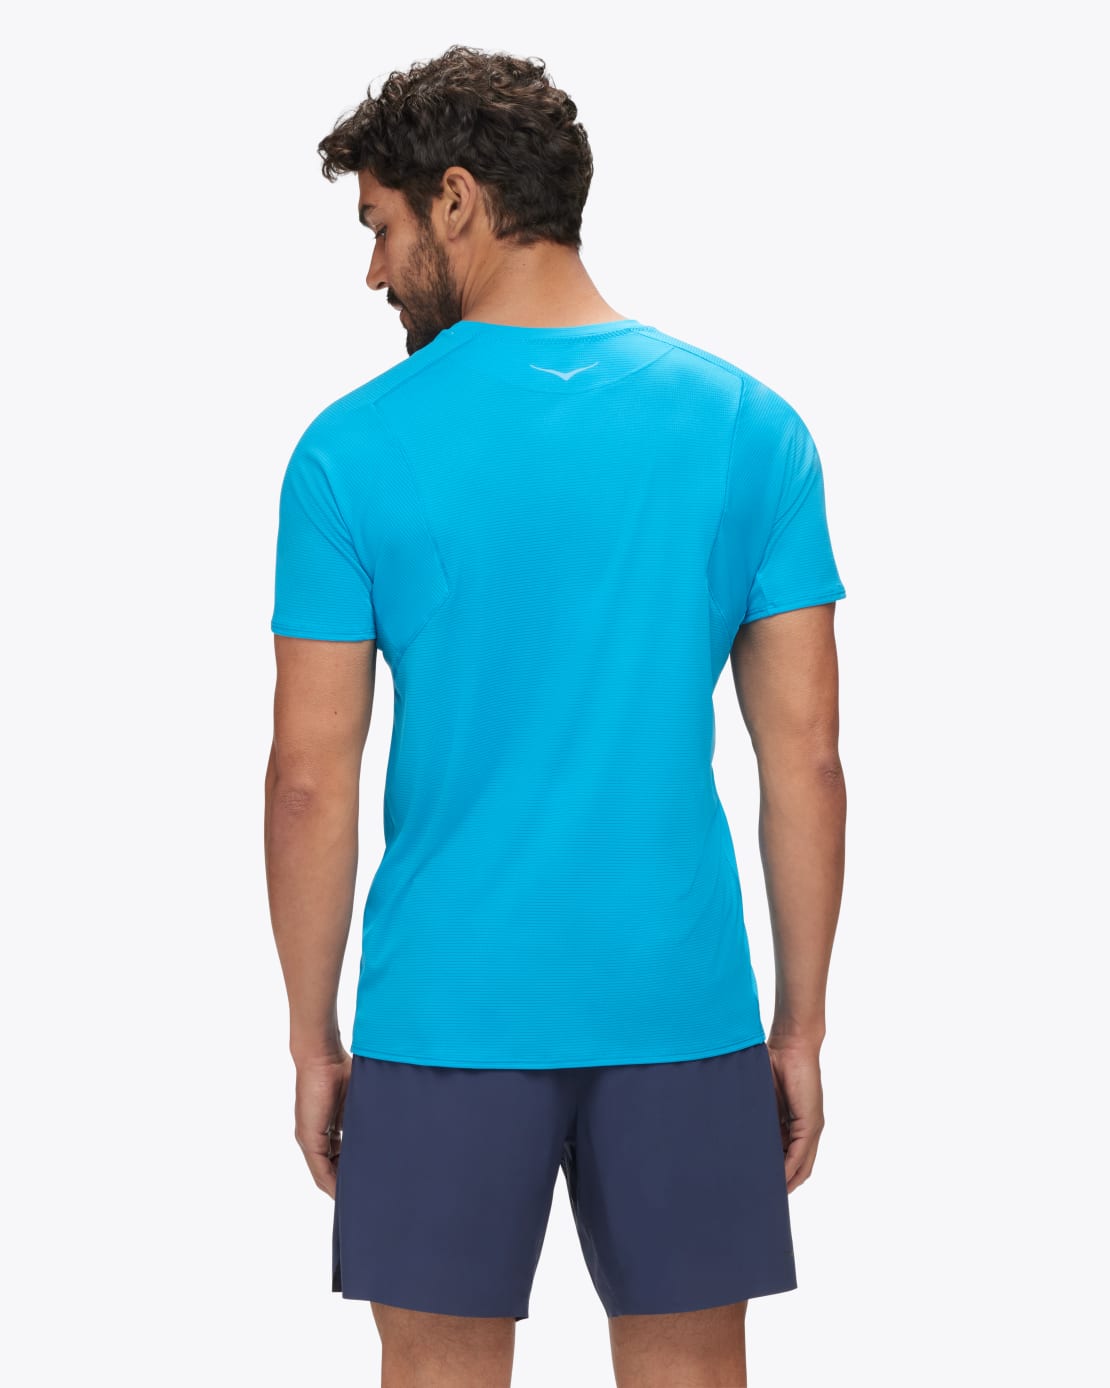 HOKA Tee-shirt de running Glide Short Sleeve Homme Rose - 1123725-BLK